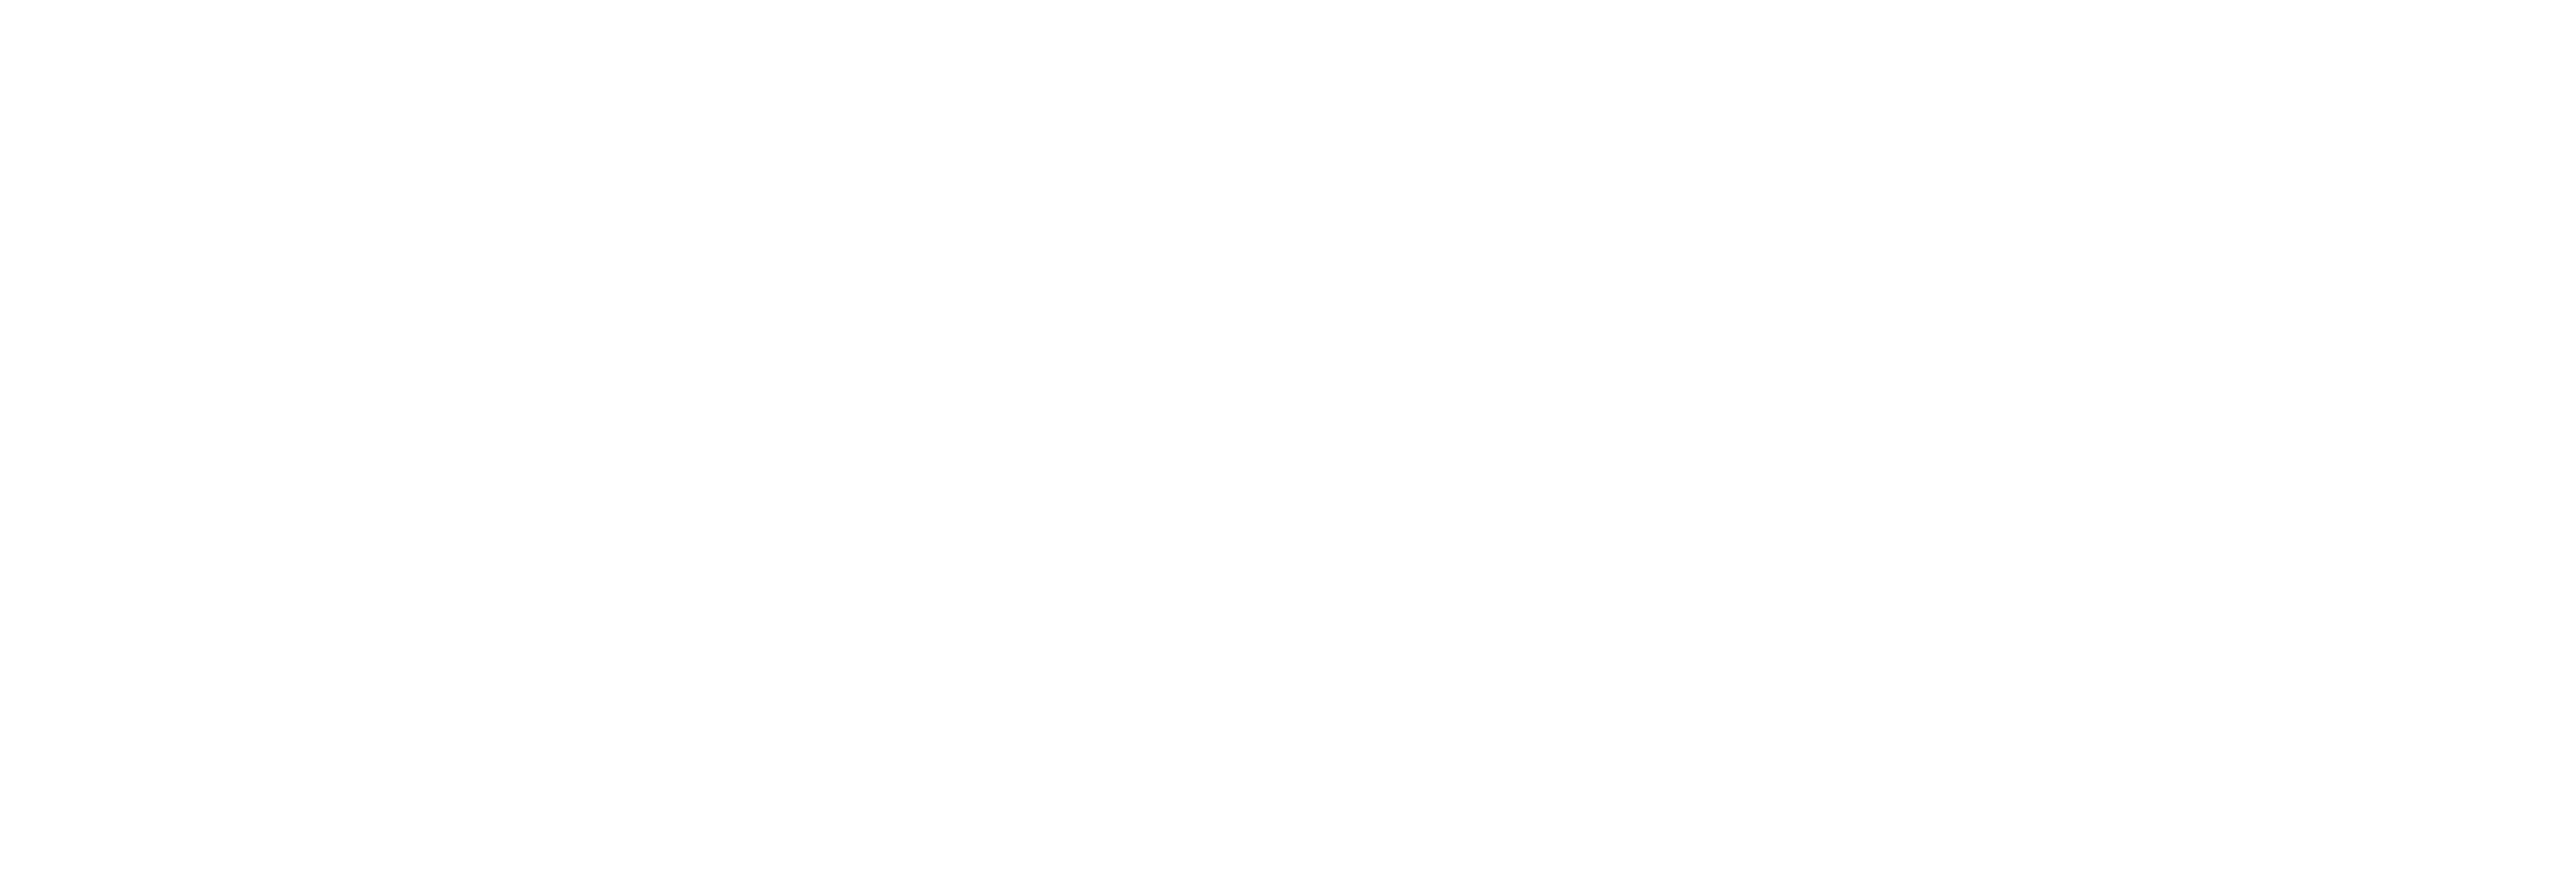 AniCura Benipeixcar Hospital Veterinario logo